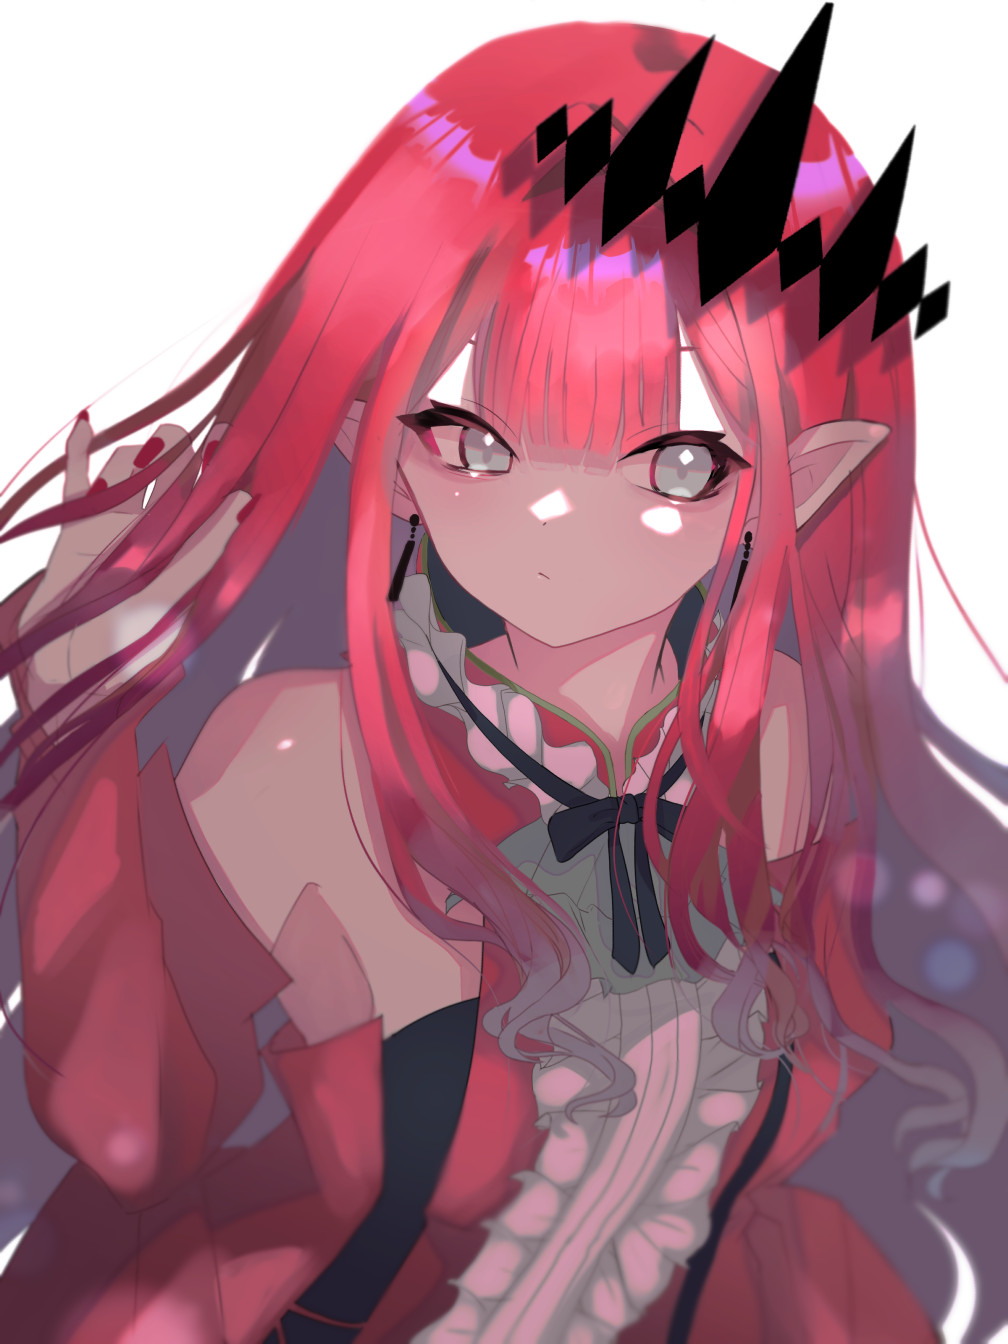 Anime Anime Girls Fate Series Fate Grand Order Baobhan Sith Long Hair Redhead Artwork Digital Art Fa 1008x1344